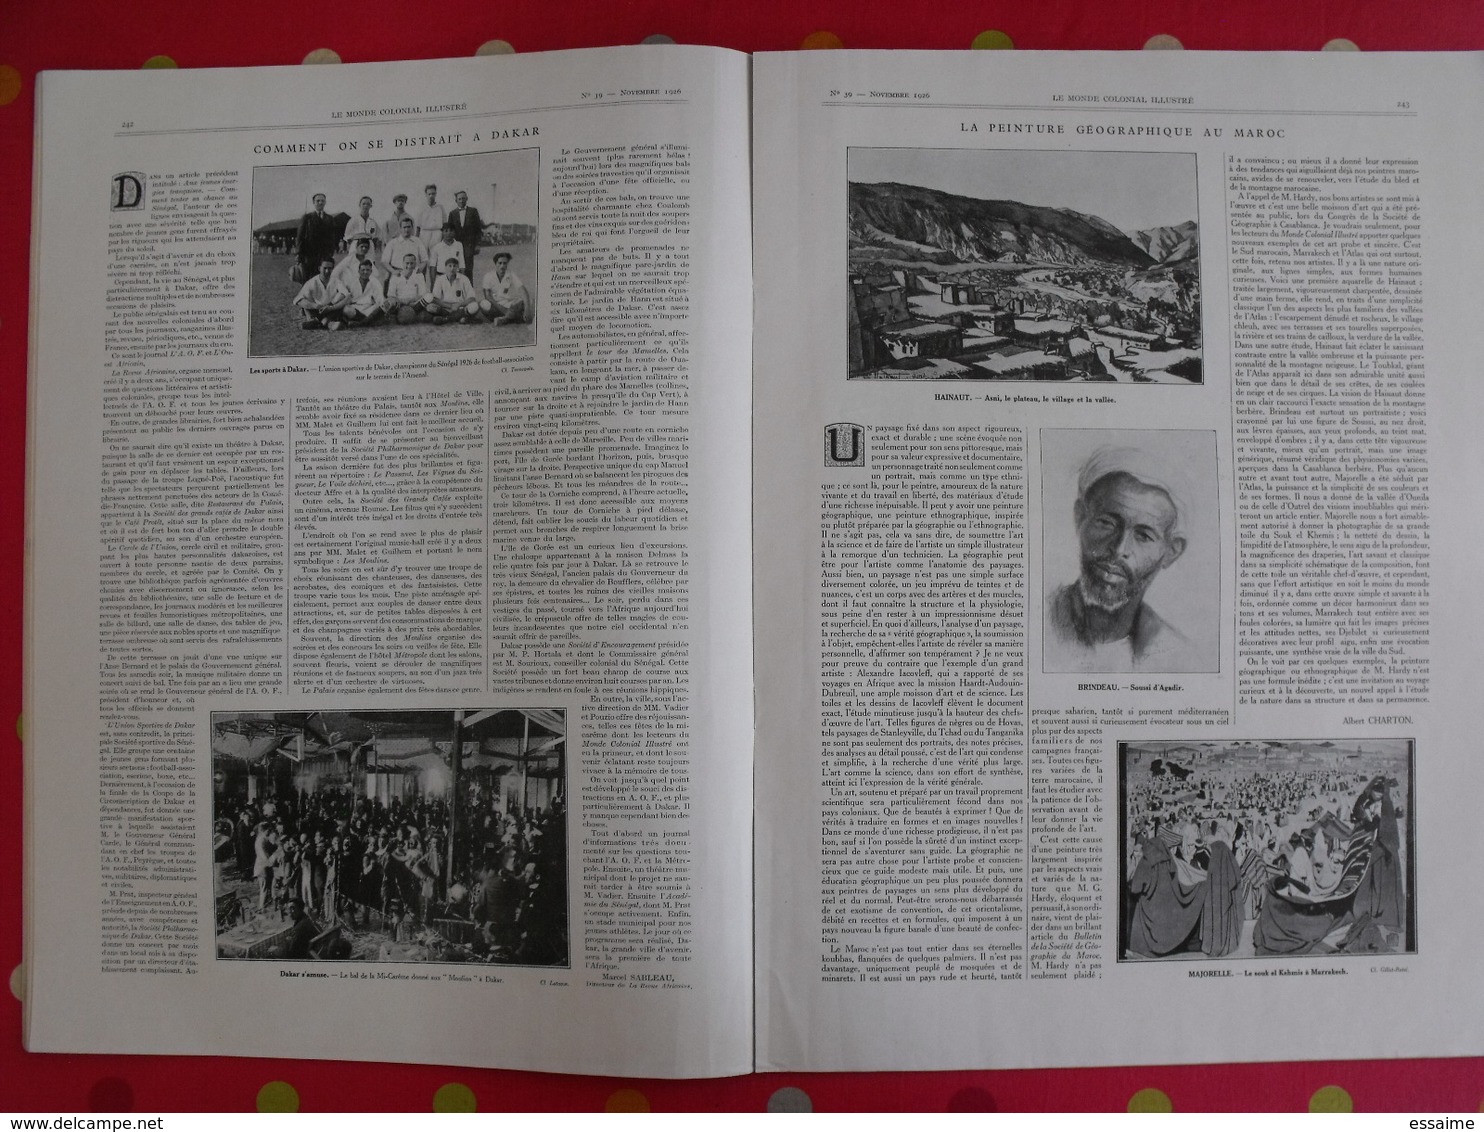 le monde colonial illustré n° 39 de 1926. tonkin hanoi oubangui-chari saint-pierre miquelon réunion dakar indochine